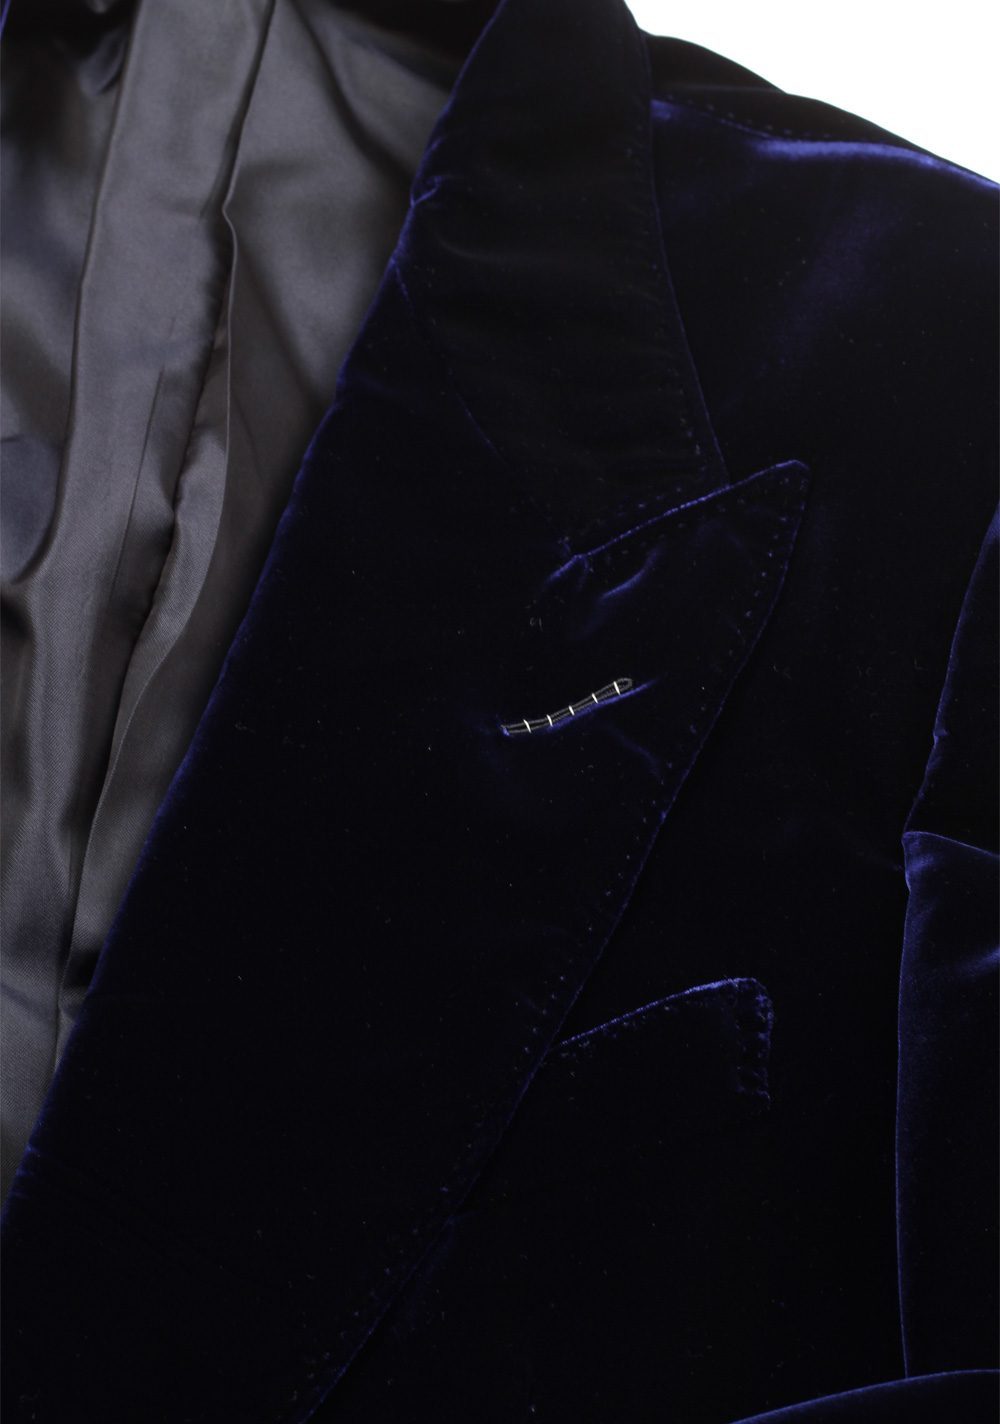 TOM FORD Shelton Blue Sport Coat Velvet Tuxedo Dinner Jacket Size 50 / 40R U.S. | Costume Limité